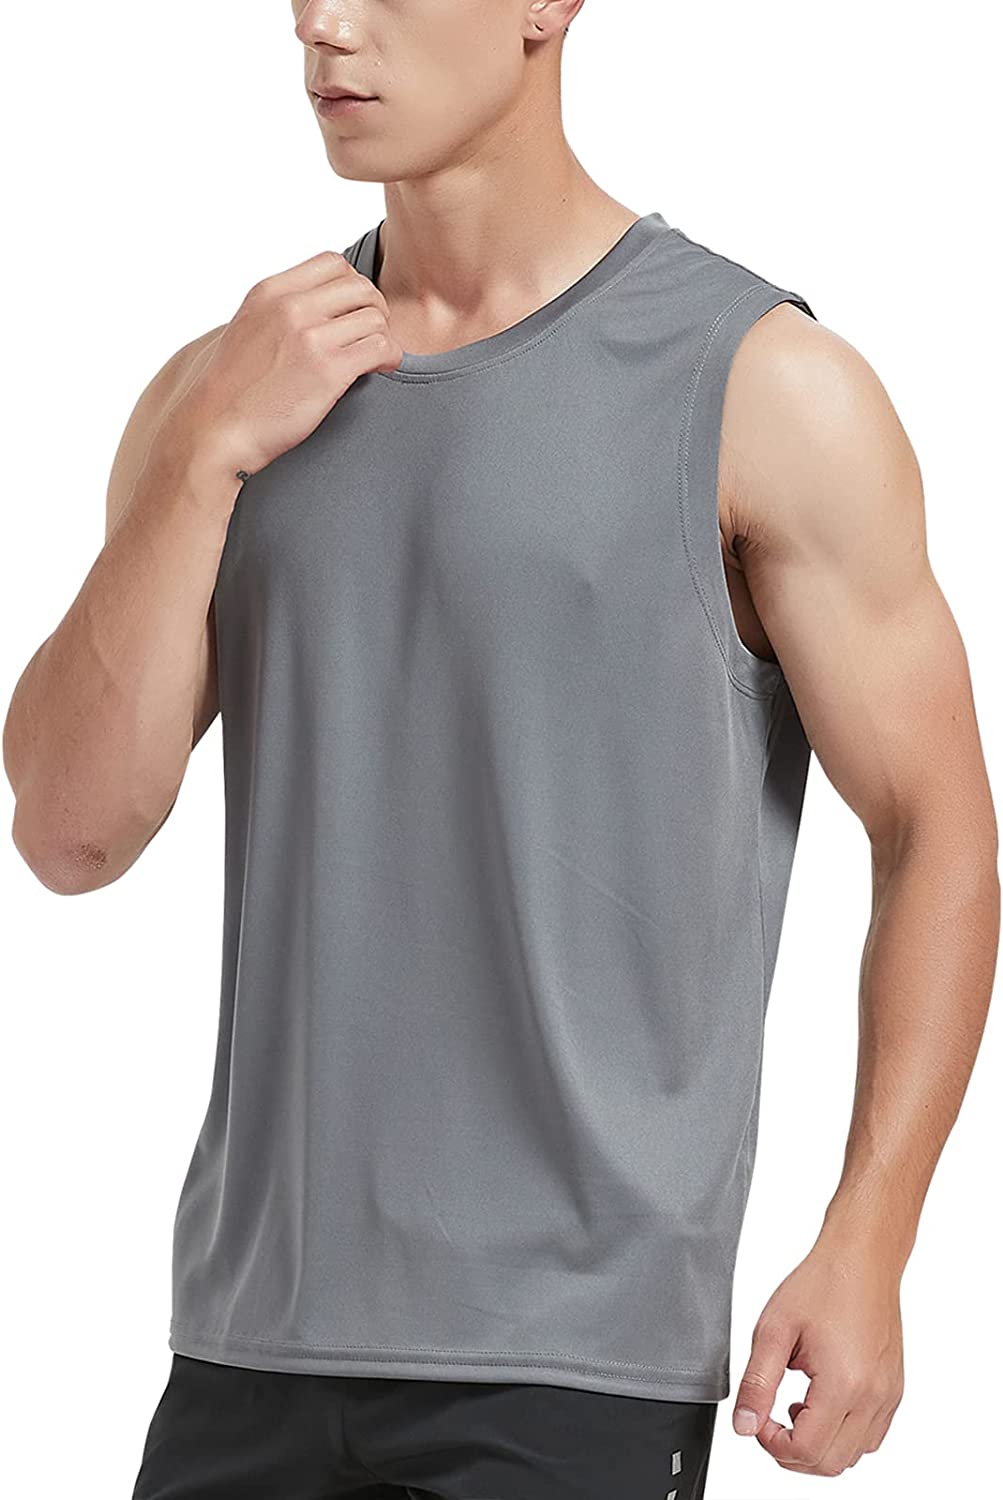 MIER Men Lightweight UPF 50+ Sun Shirts Quick Dry Tank Tops